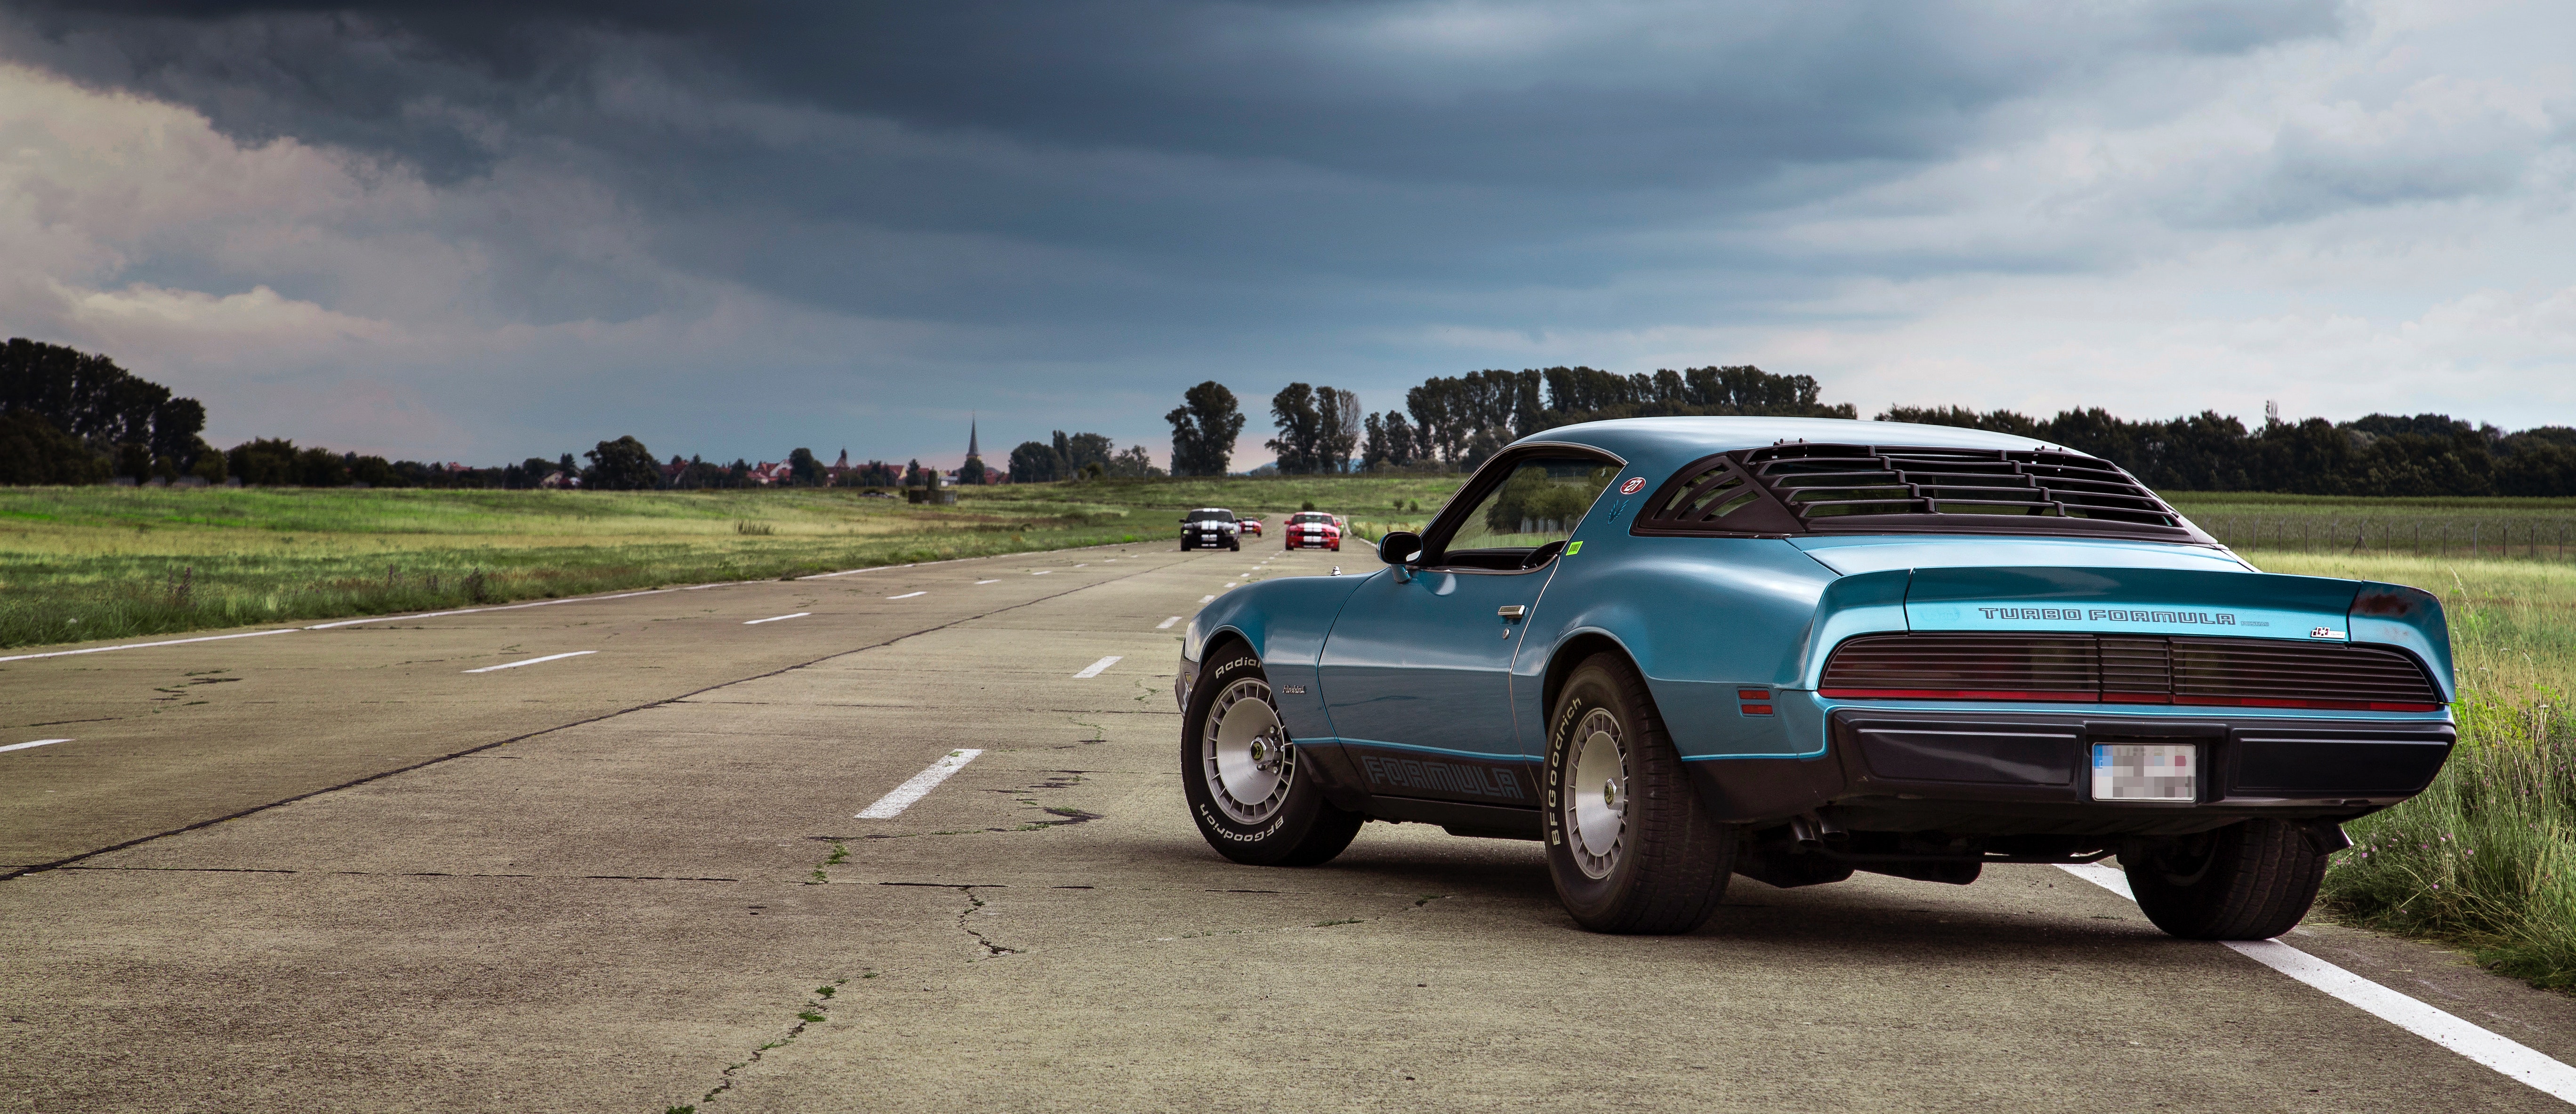 En Mustang på asfalt